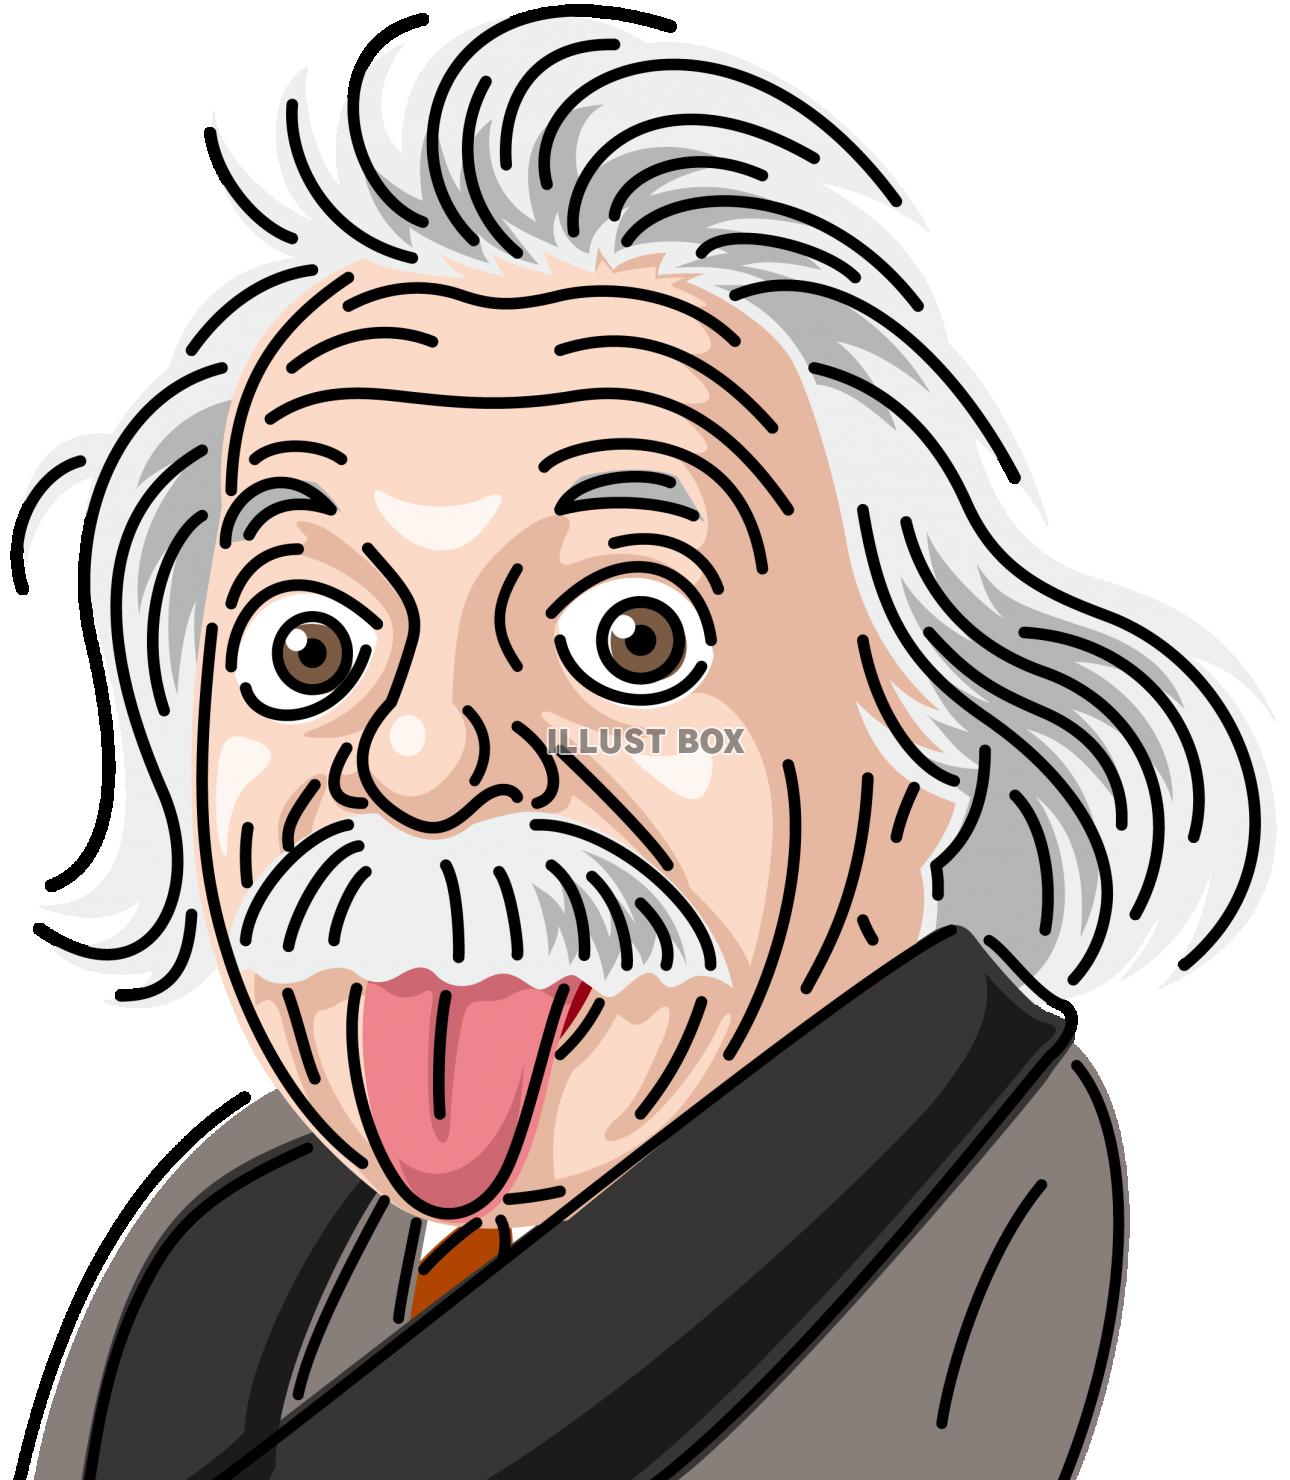 天才理論物理学者 アインシュタイン